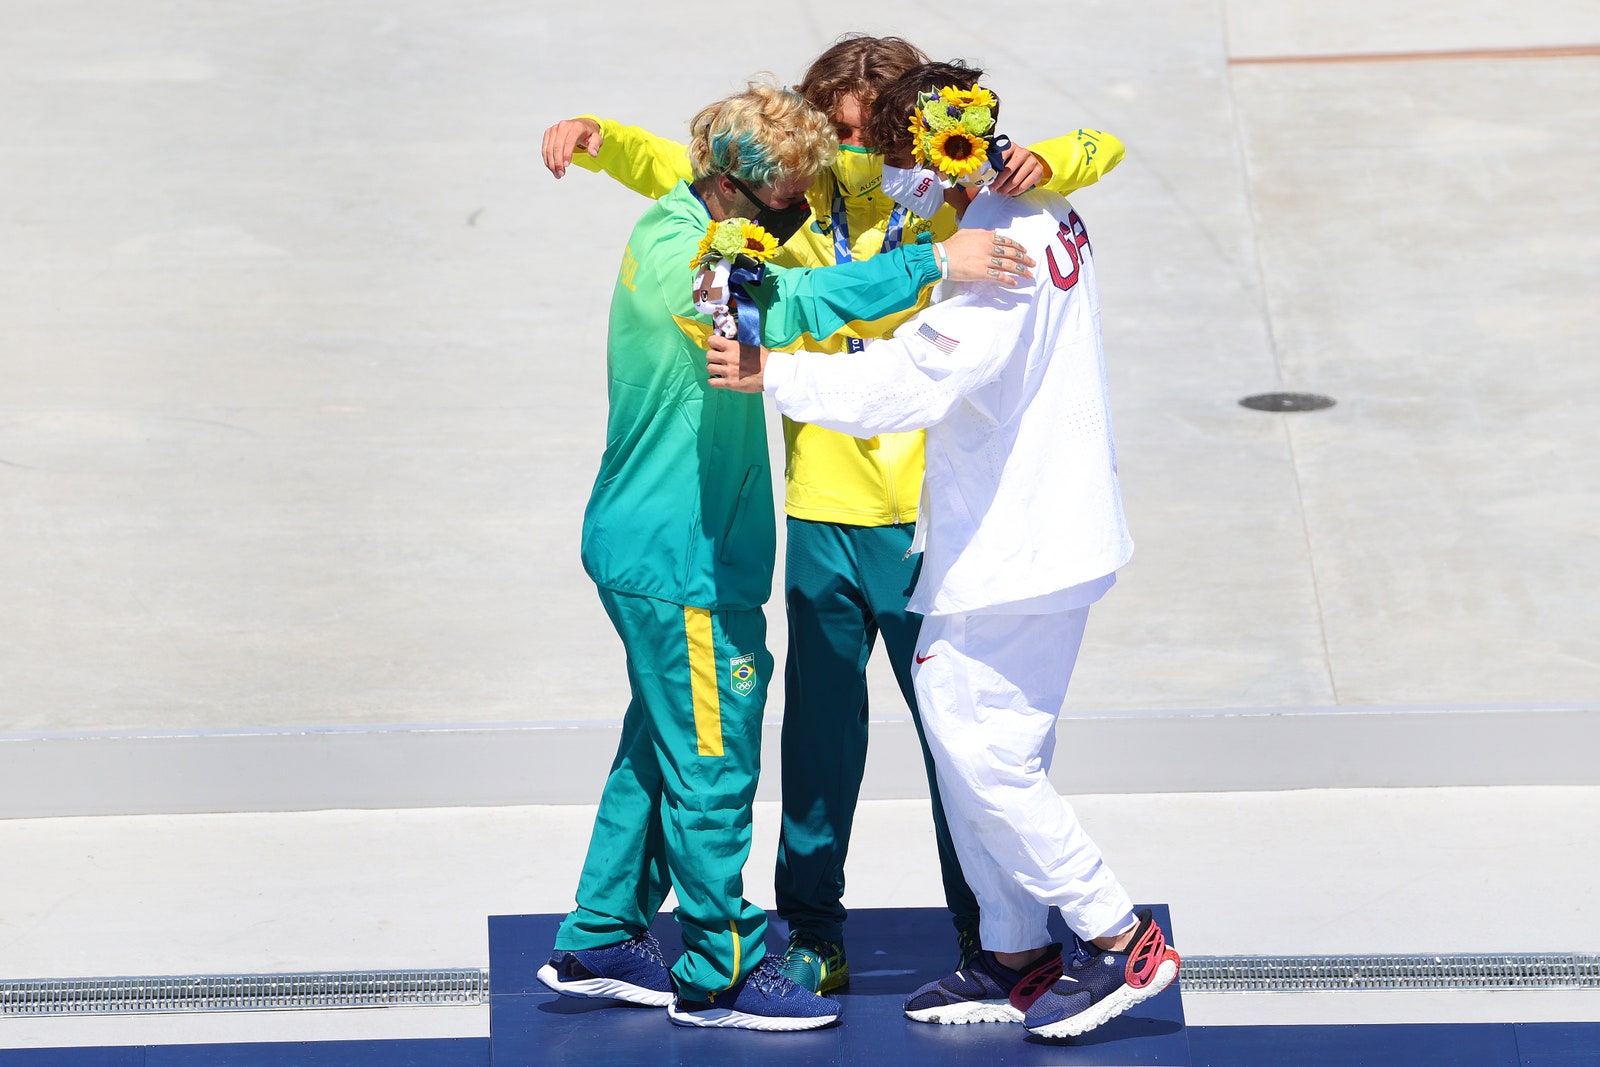 Серебряный медалист Педро Баррос  золотой медалист Киган Палмер  и бронзовый медалист Кори Джуно  5 августа 2021